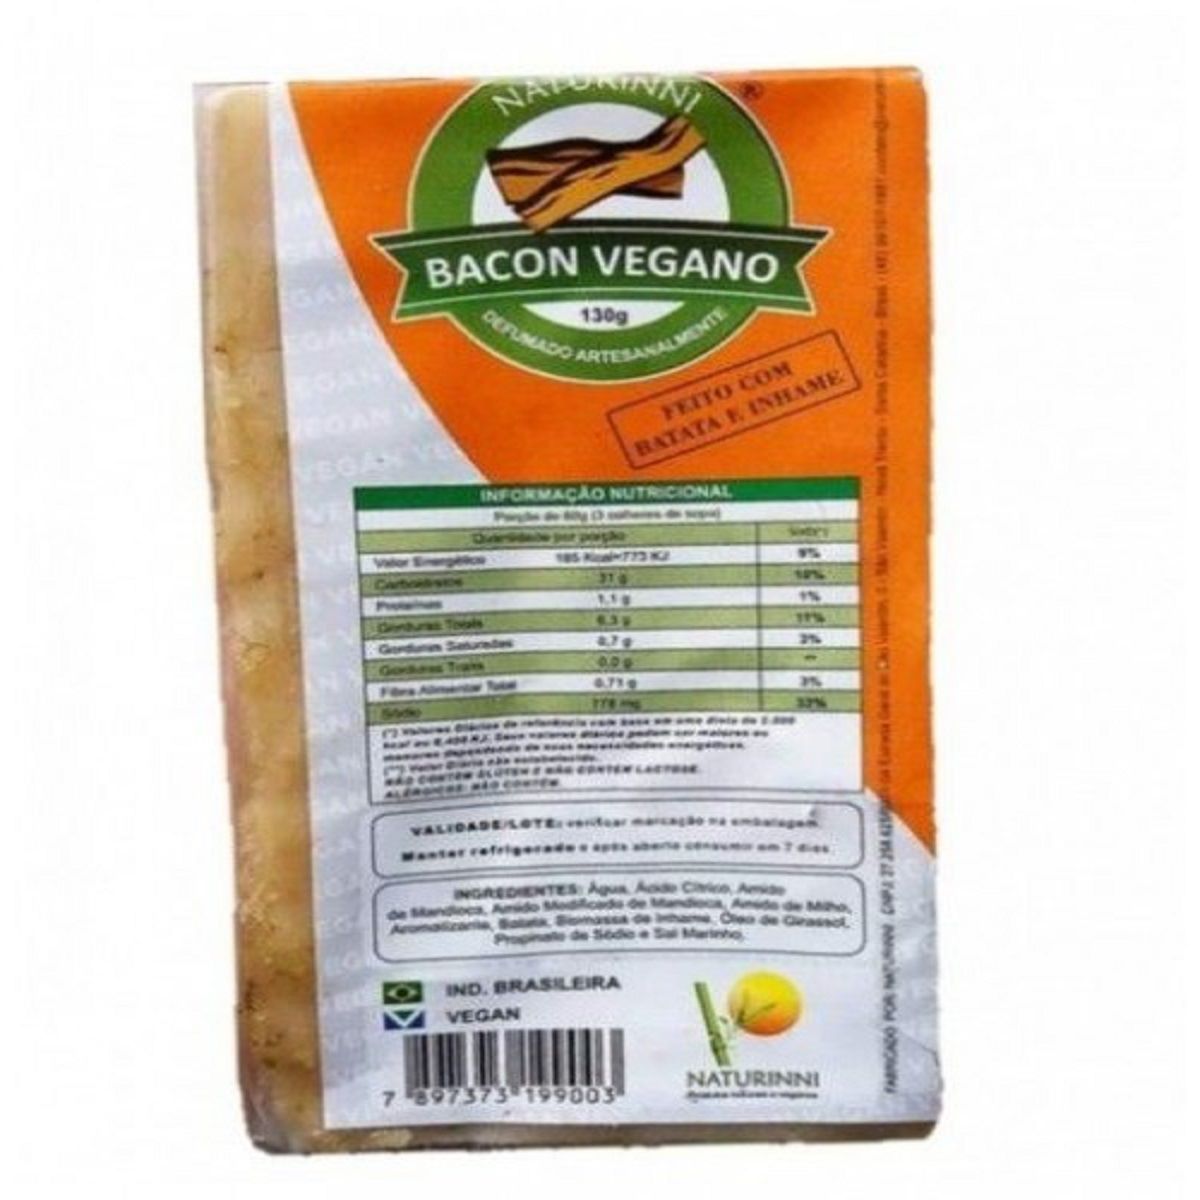 bacon-vegano-naturinni-130-g-1.jpg